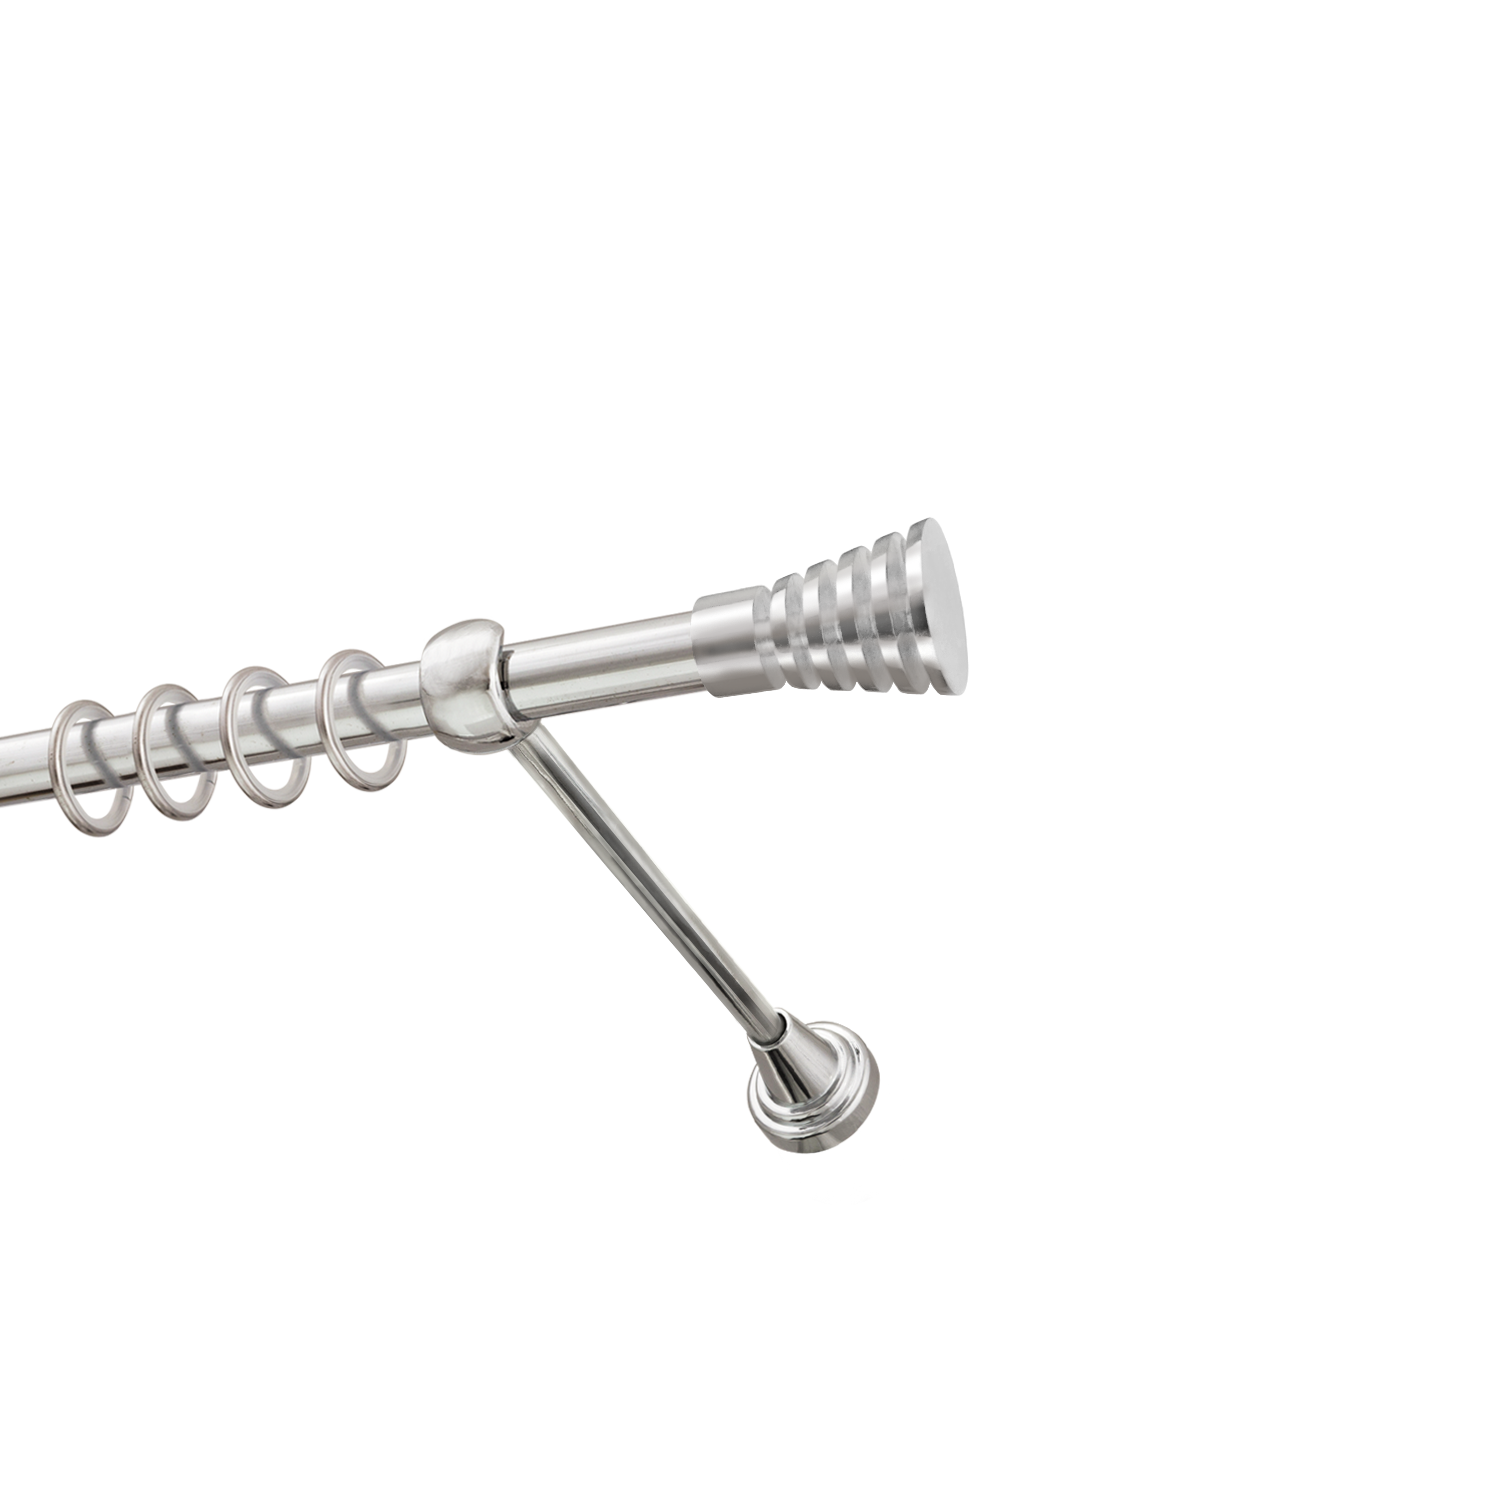 Металлический карниз для штор Верона, однорядный 16 мм, серебро, гладкая штанга, длина 240 см - фото Wikidecor.ru